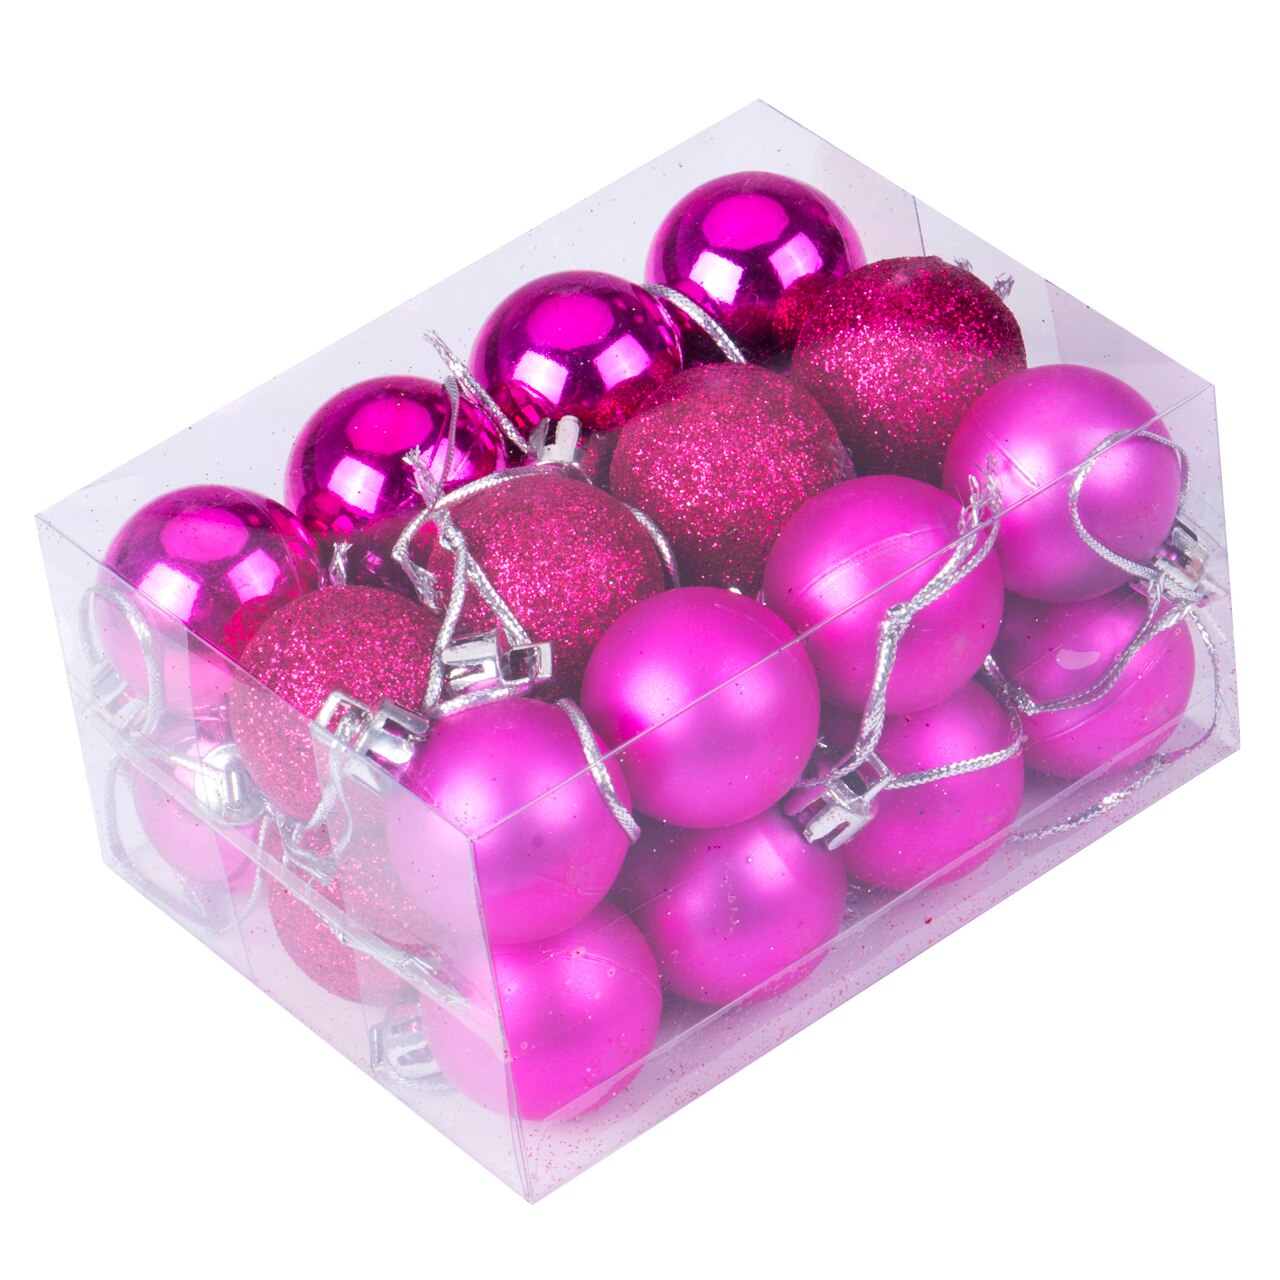 Solid 24 stk skønhed jul hjem træ festlige xmas bolde med en kasse dekoration kugler fest bryllup ornament smuk: Rosenrød